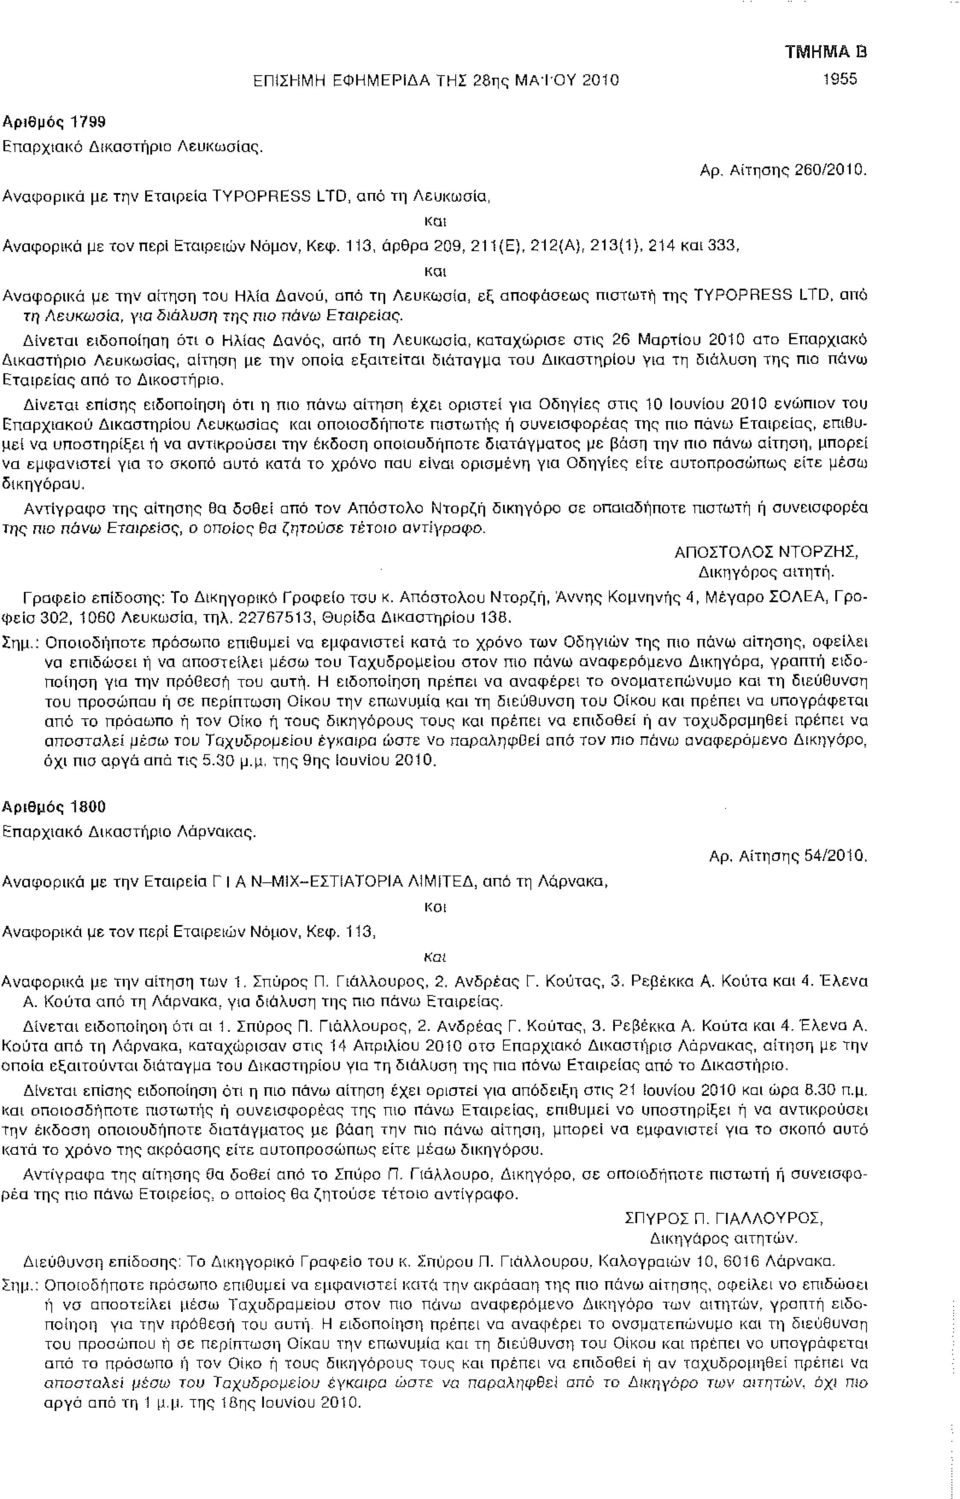 113, άρθρα 209, 211(E), 212(A), 213(1), 214 και 333, και Αναφορικά με την αίτηαη του Ηλία Δανού, από τη Λευκωσία, εξ αποφάσεως πιστωτή της TYPOPRESS LTD, από τη Λευκωσία, για διάλυση της πιο πάνω